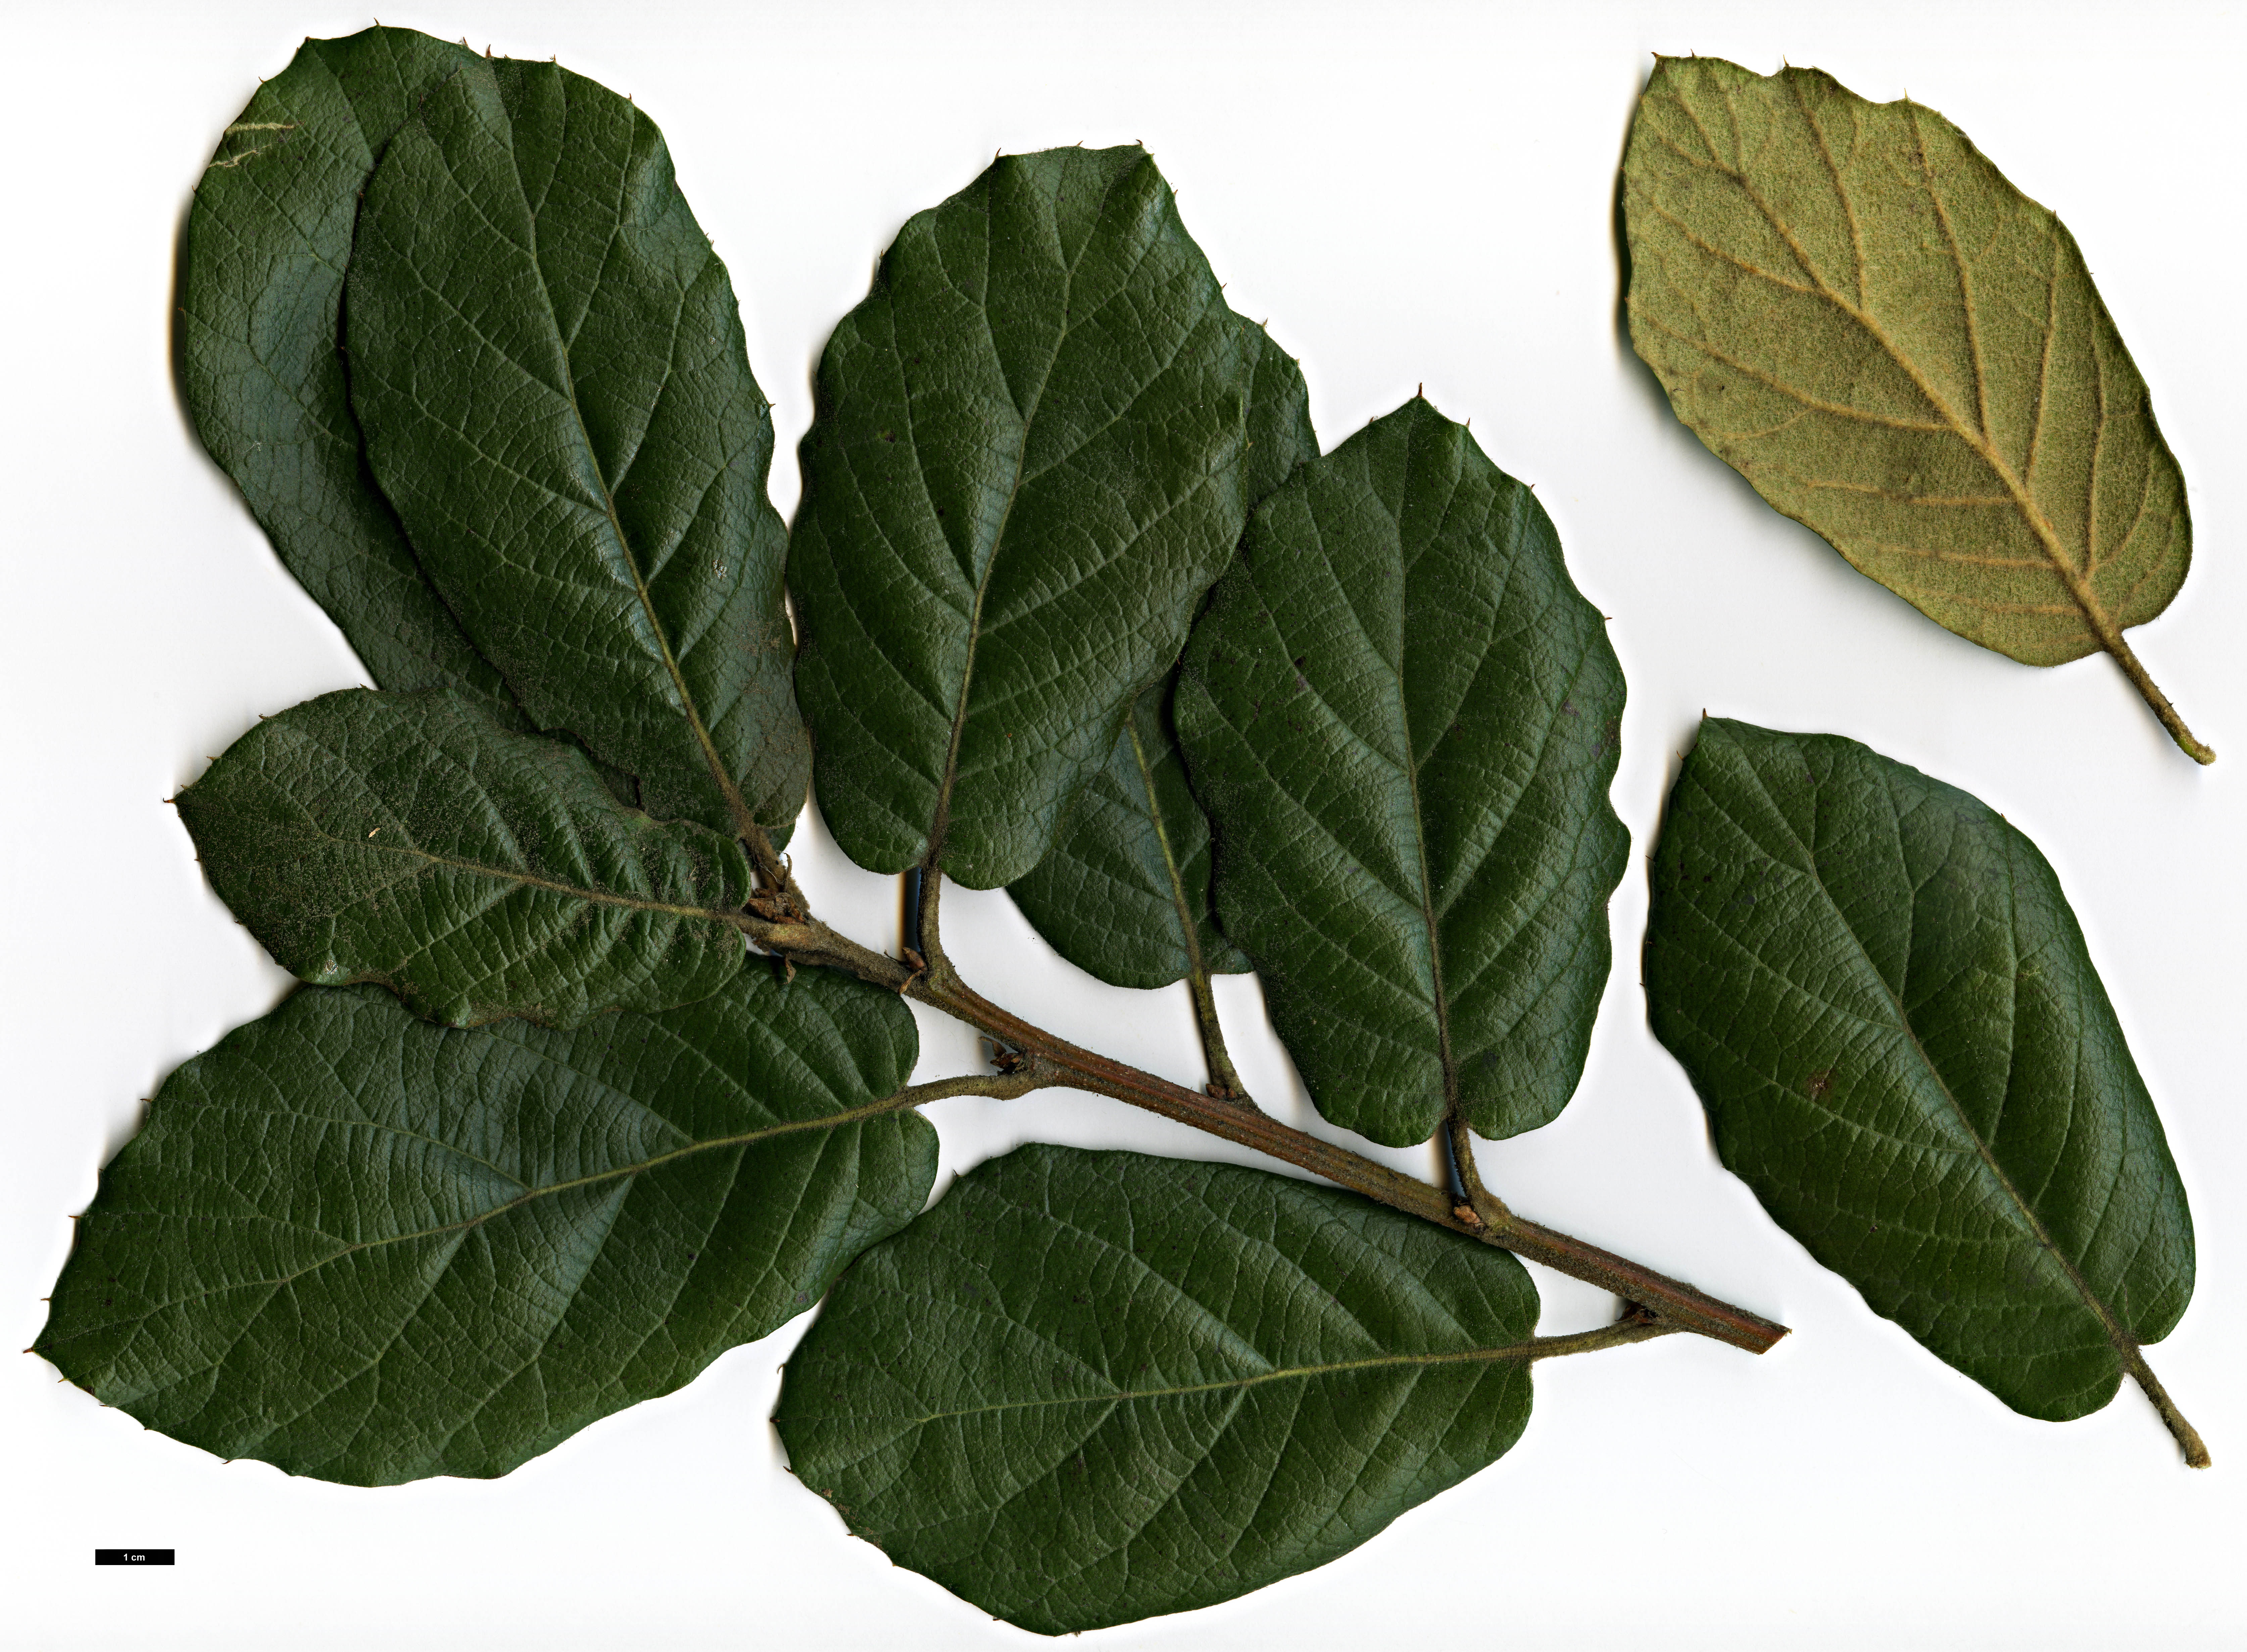 High resolution image: Family: Fagaceae - Genus: Quercus - Taxon: crassifolia